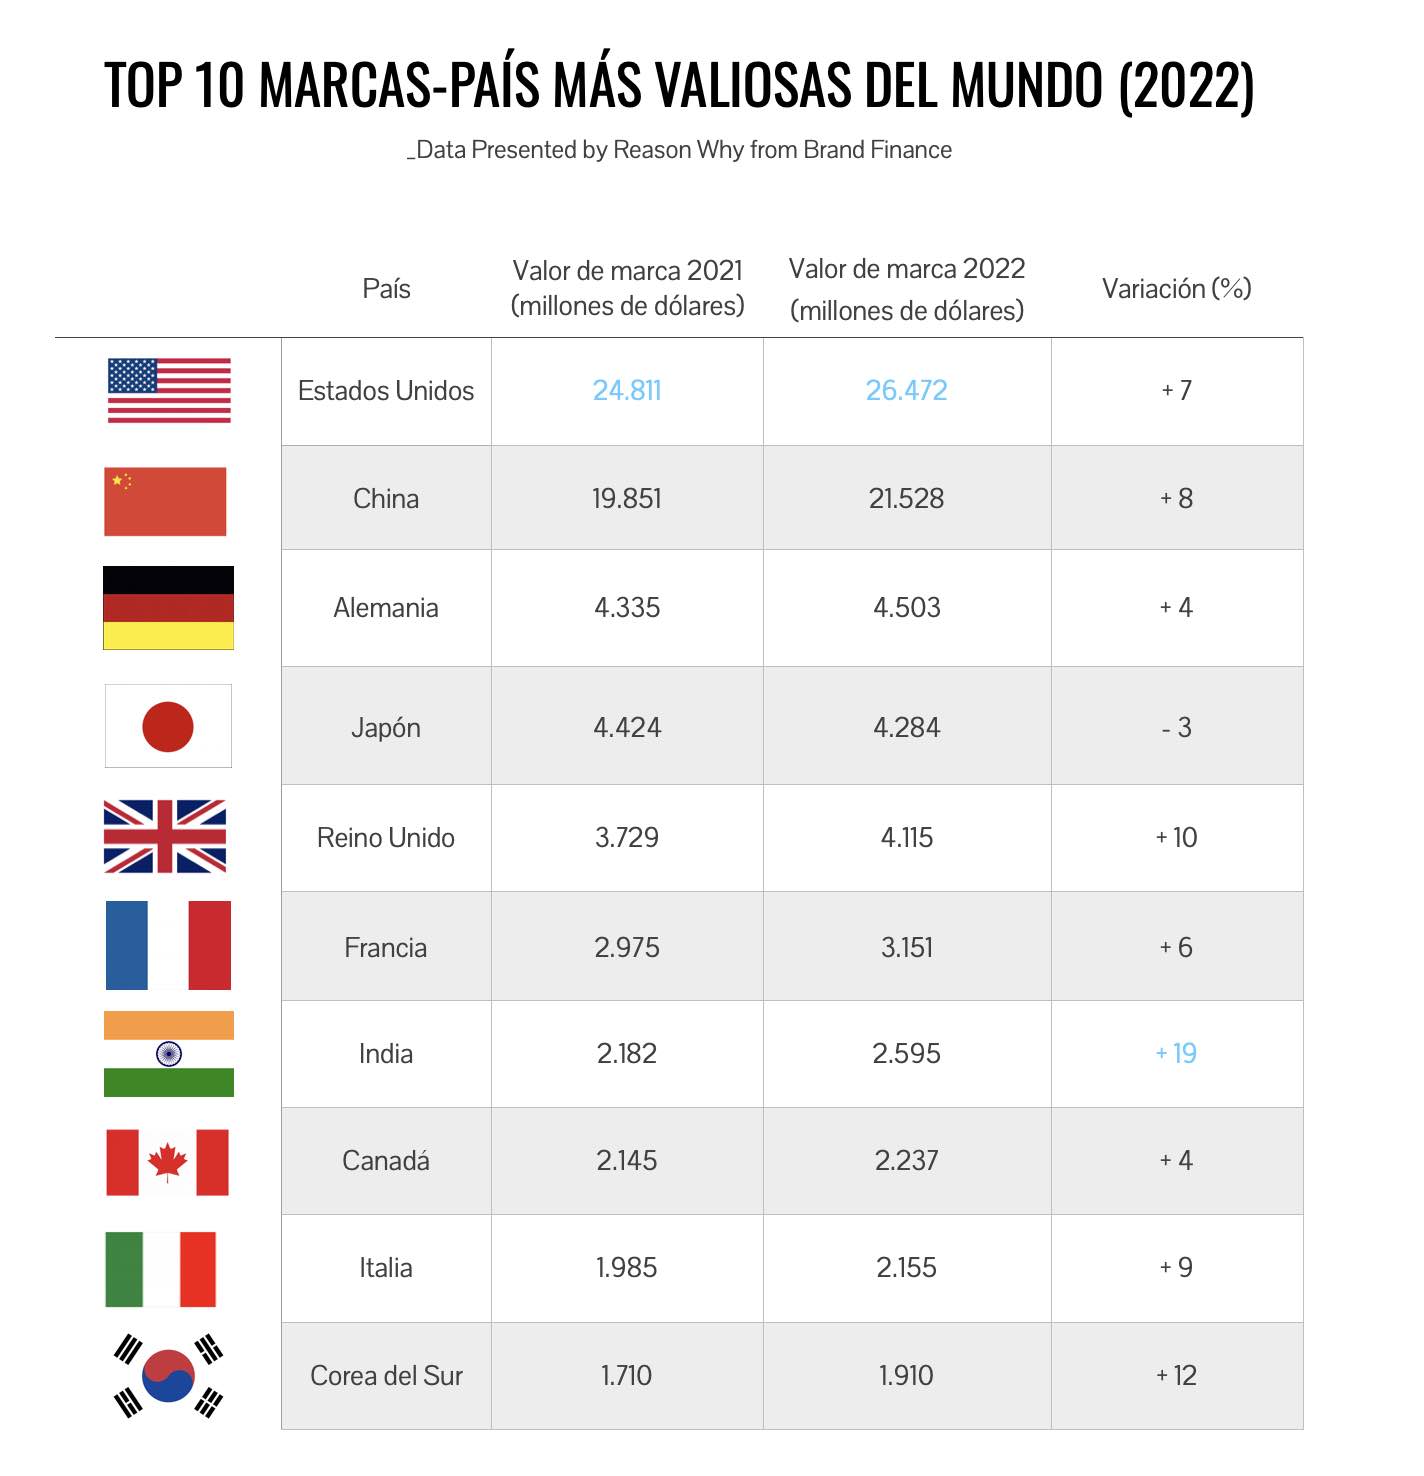 Ranking de las marcas-país más valiosas del mundo (2022)